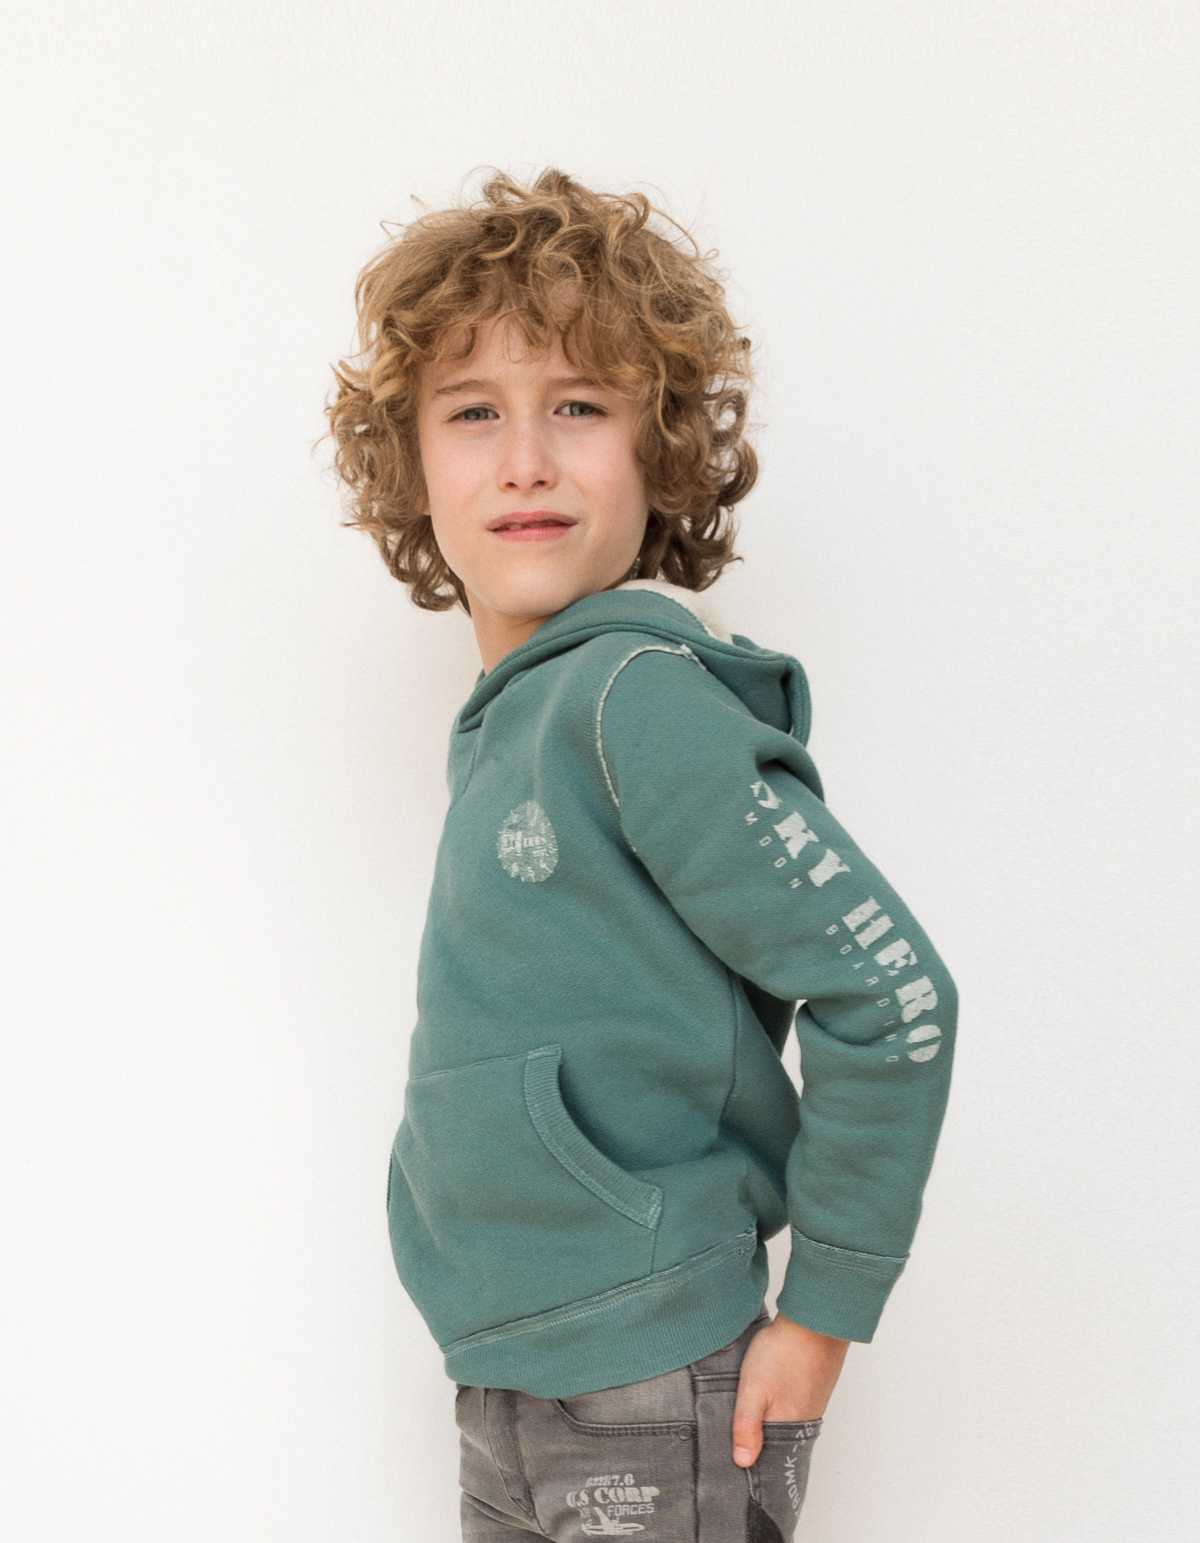 Kleding Jongenskleding Babykleding voor jongens Truien Warm sweater for you newborn baby 